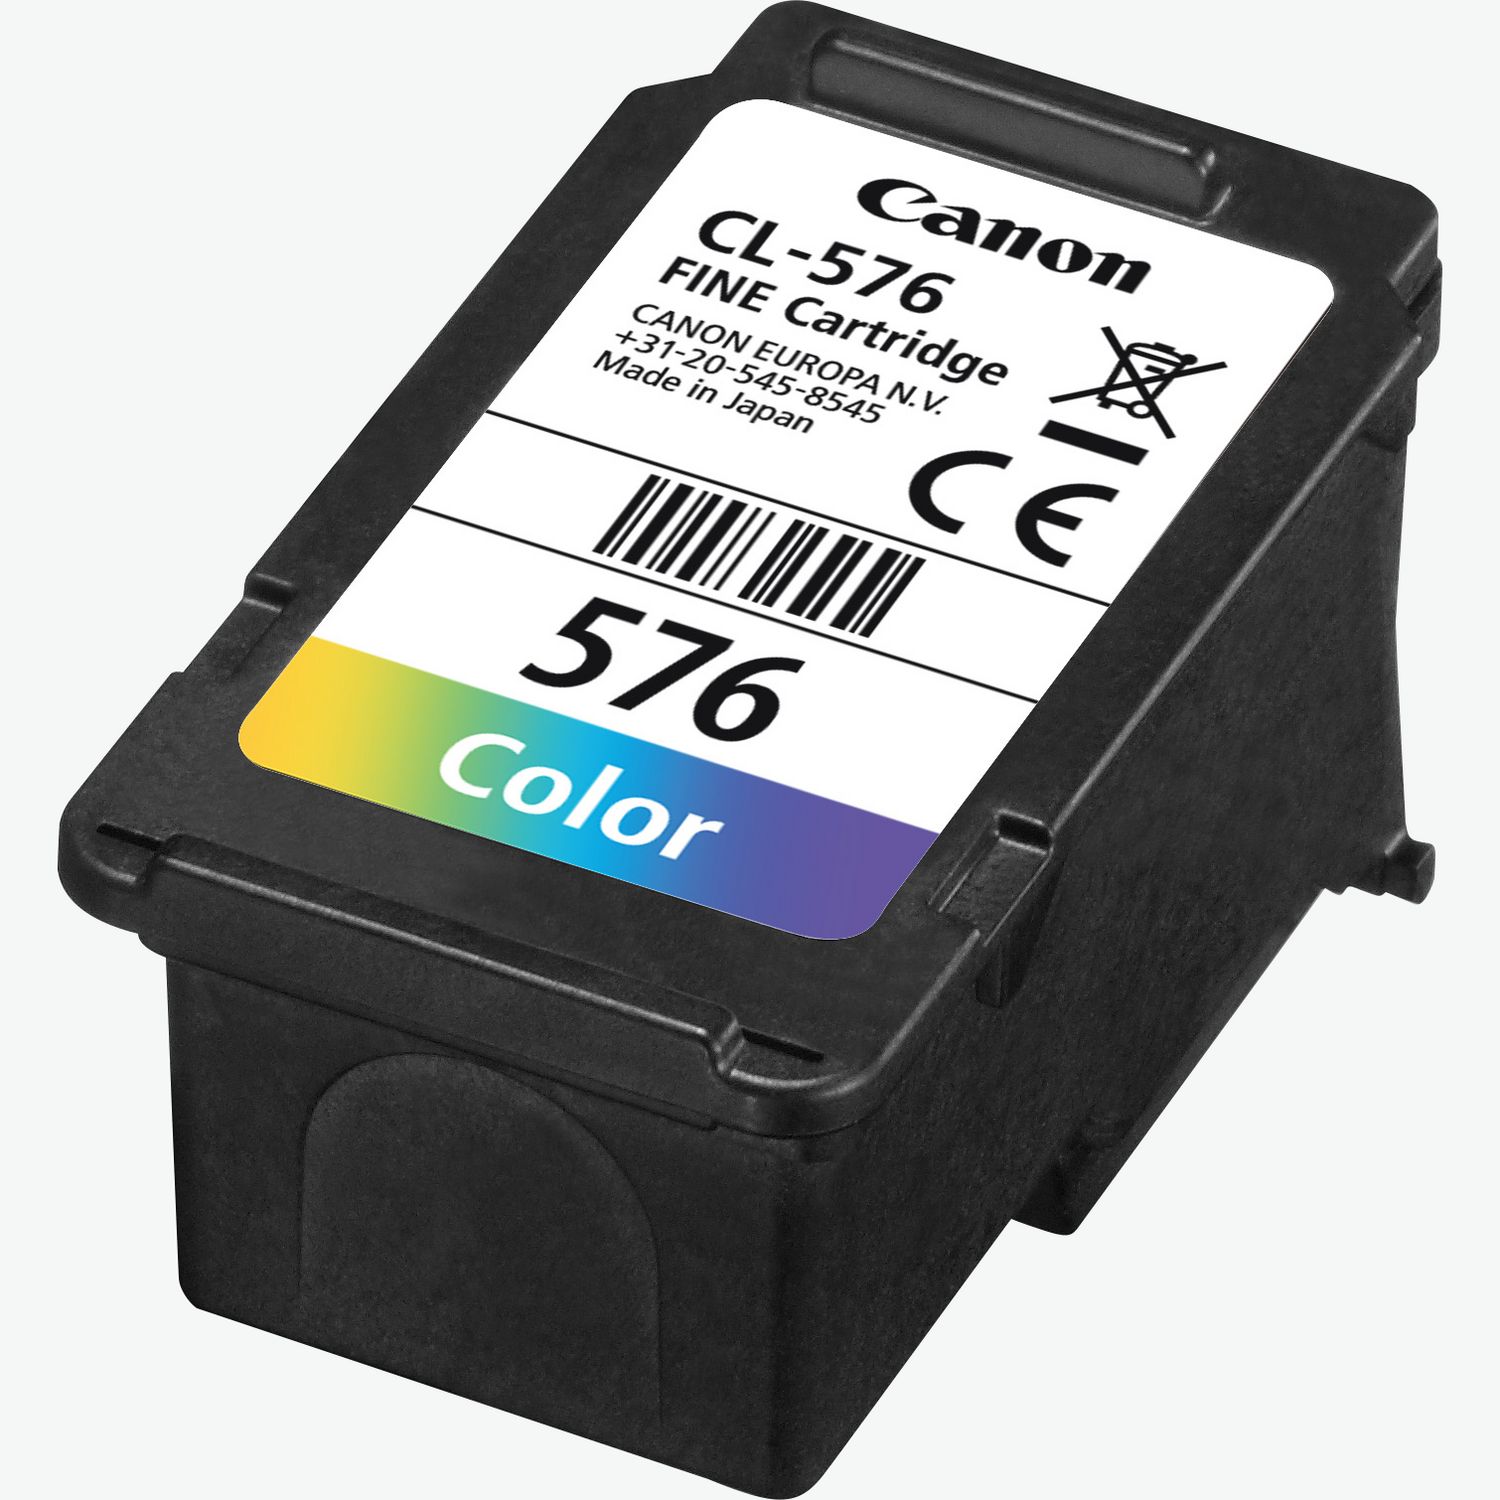 Buy Canon PIXMA TS6150 - Black in Discontinued — Canon Ireland Store